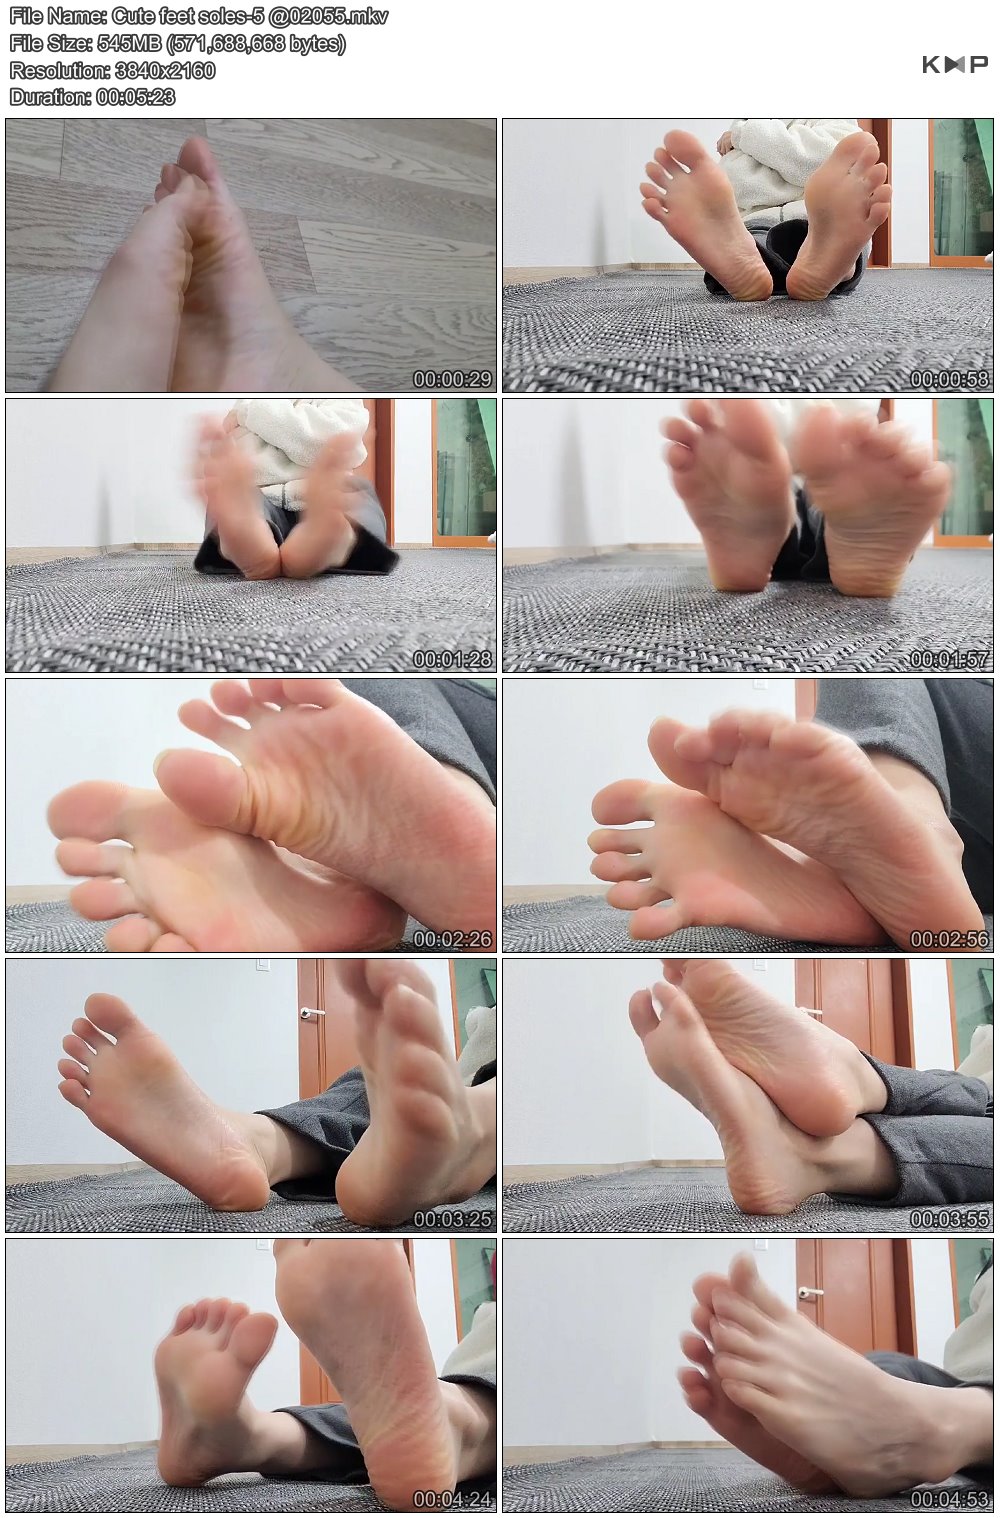 Cute feet soles-5 @02055.JPG